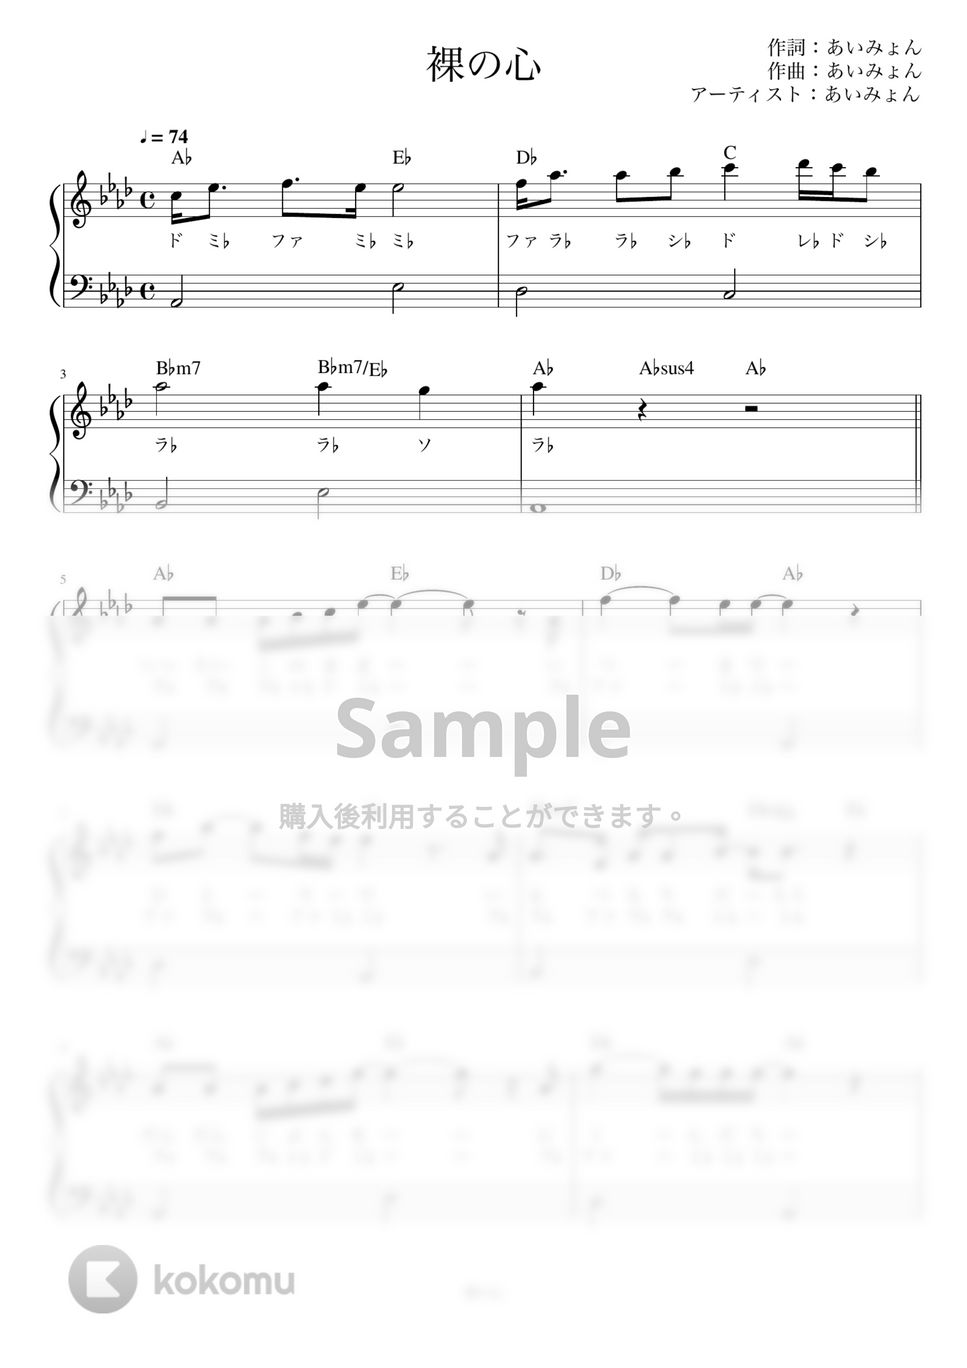 あいみょん - 裸の心 (ピアノ かんたん 歌詞付き ドレミ付き 初心者) by piano.tokyo